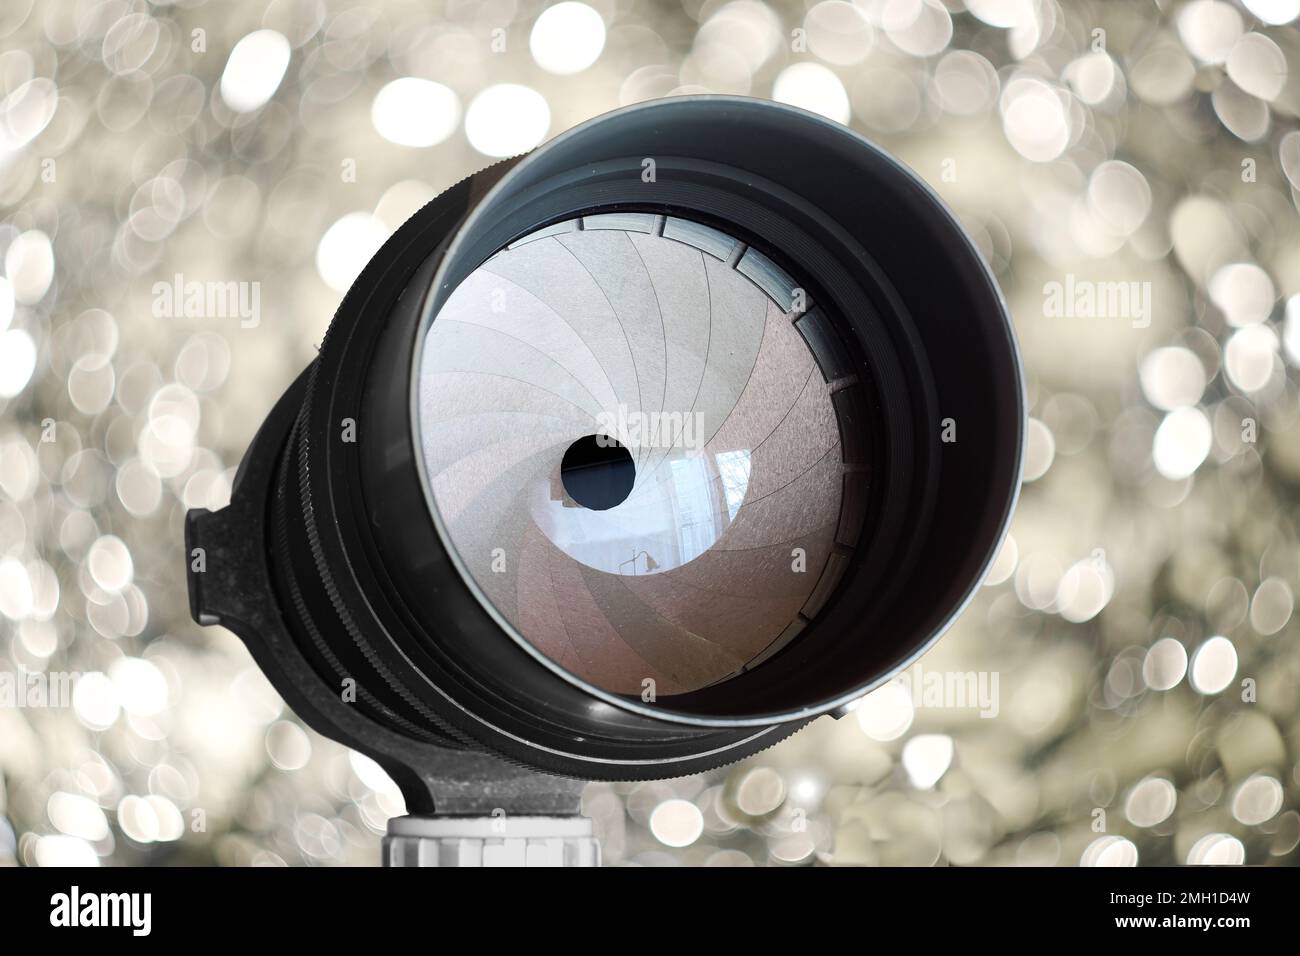 Oldtimer-Objektiv mit 20-mm-Verschlussklingen, ein echtes Bokeh-Monster, wirbelnde Bokeh-Bälle im Hintergrund, kostenloser Kopierbereich Stockfoto